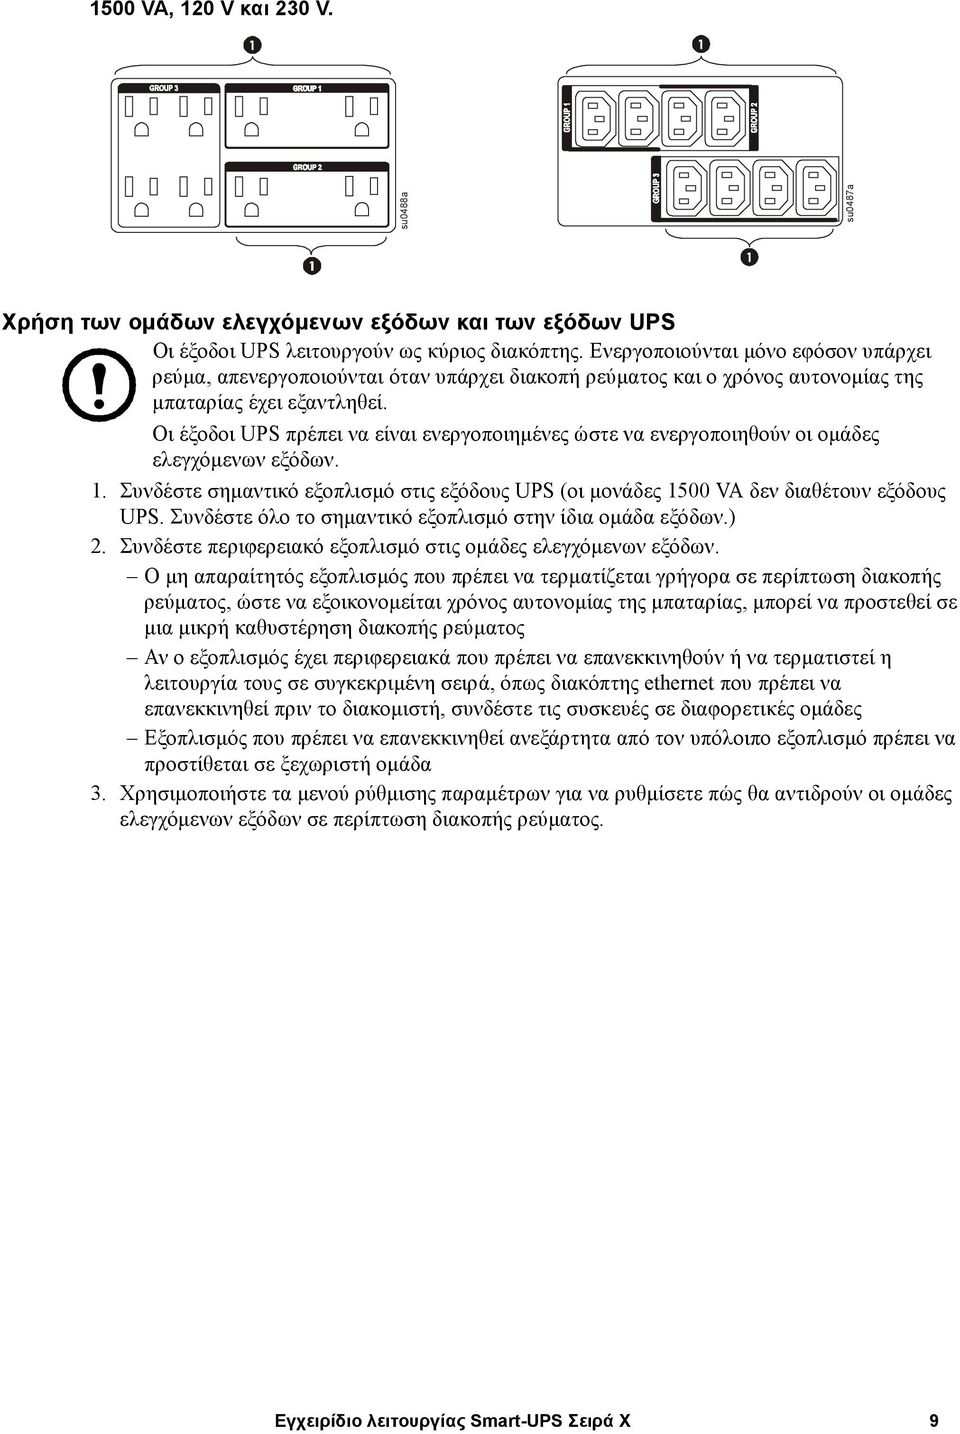 Οι έξοδοι UPS πρέπει να είναι ενεργοποιηµένες ώστε να ενεργοποιηθούν οι οµάδες ελεγχόµενων εξόδων. 1. Συνδέστε σηµαντικό εξοπλισµό στις εξόδους UPS (οι µονάδες 1500 VA δεν διαθέτουν εξόδους UPS.